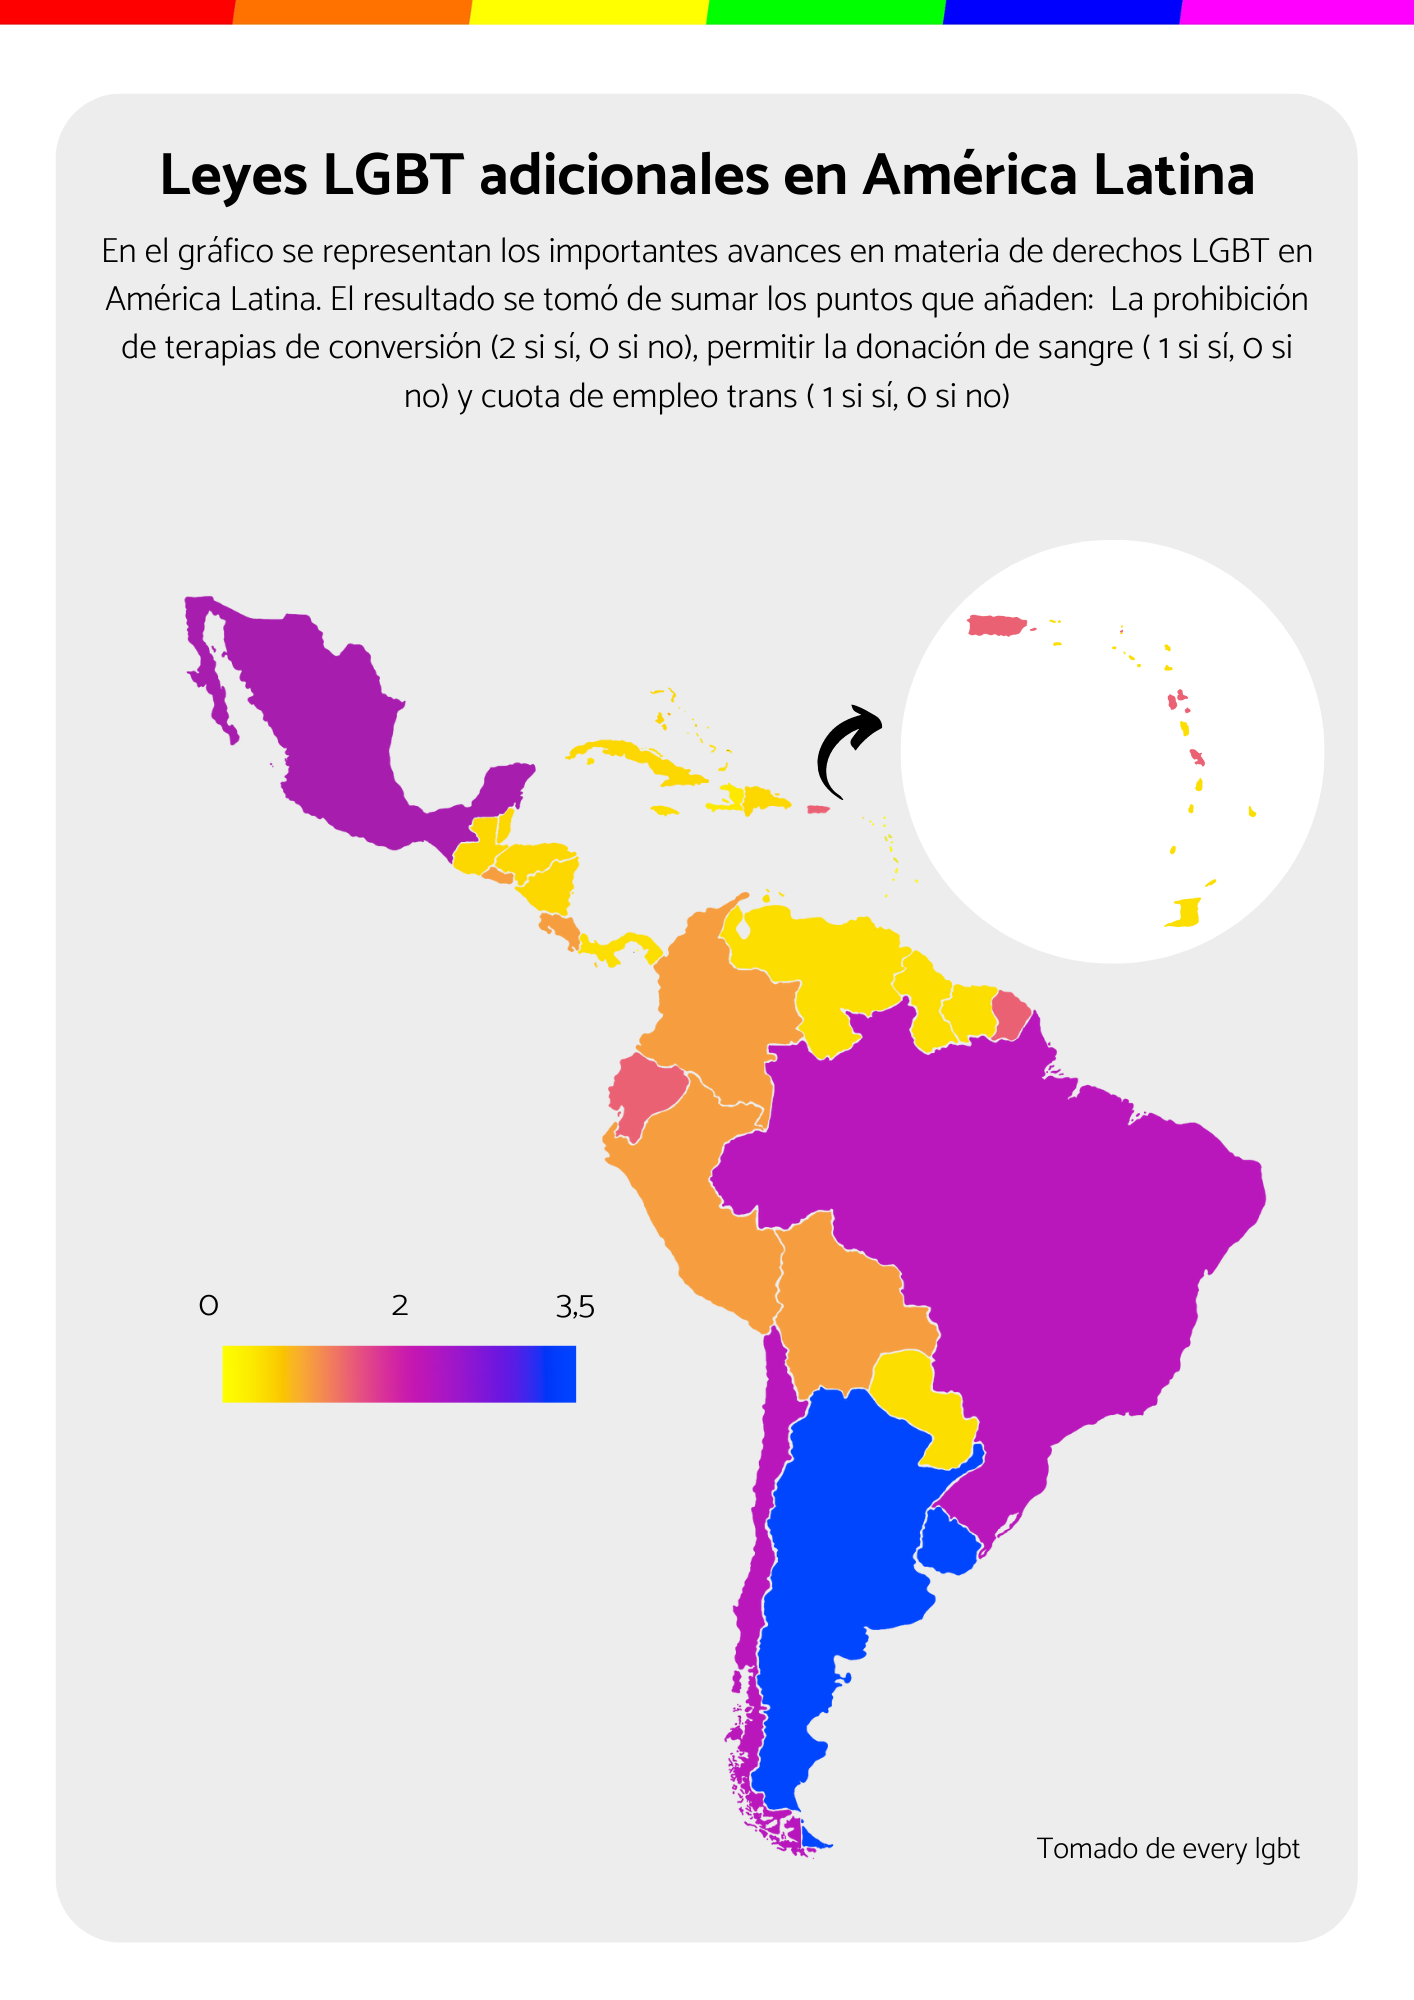 Leyes LGBT adicionales en América Latina y El Caribe